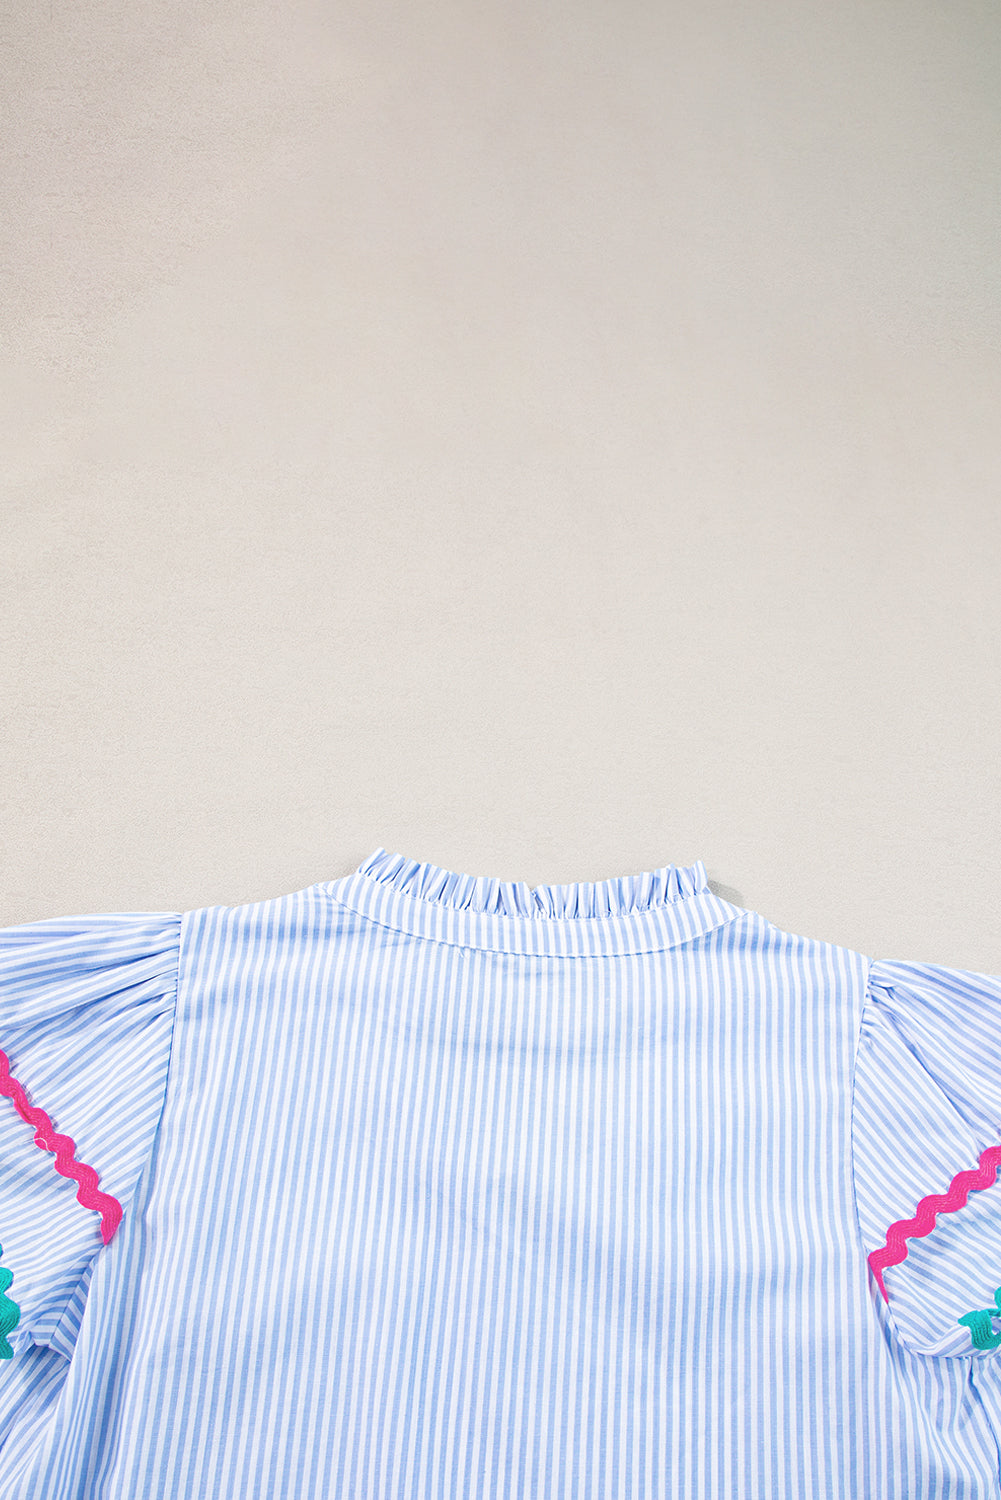 Himmelblaue gestreifte Ricrac-Besatz-Bluse mit geteiltem Ausschnitt und gestreiften Rüschenärmeln